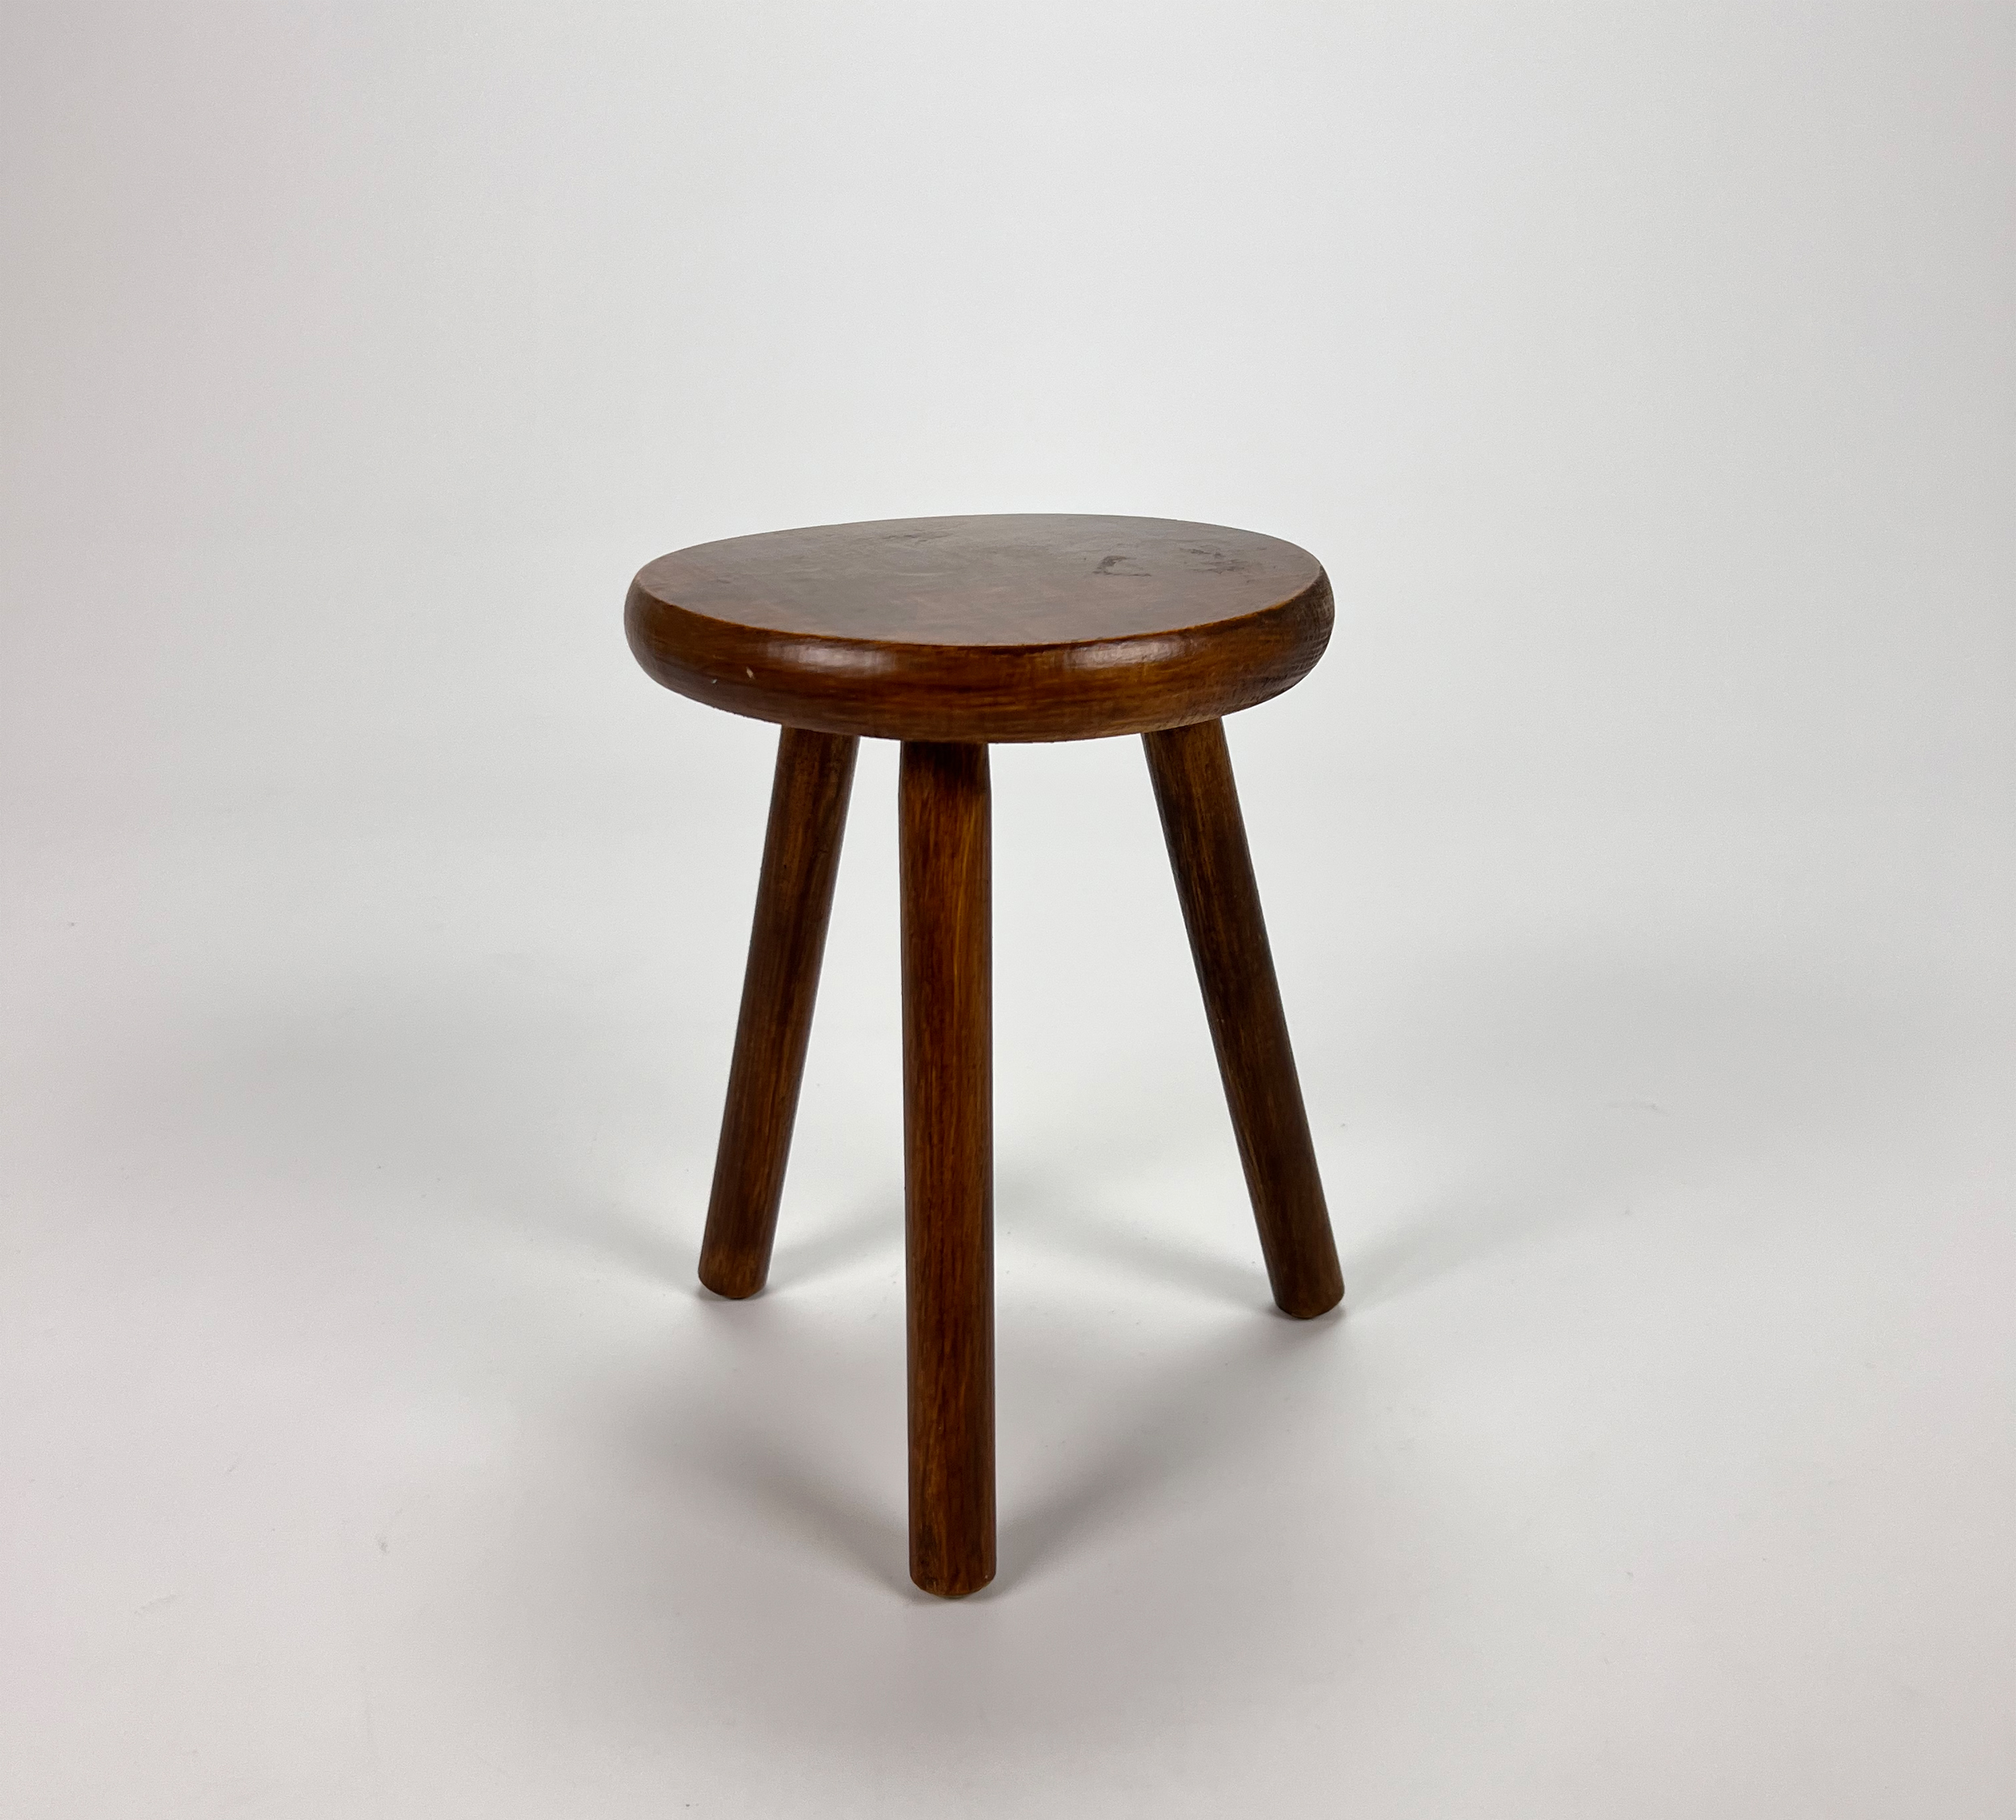 Modernist stool, 1950s